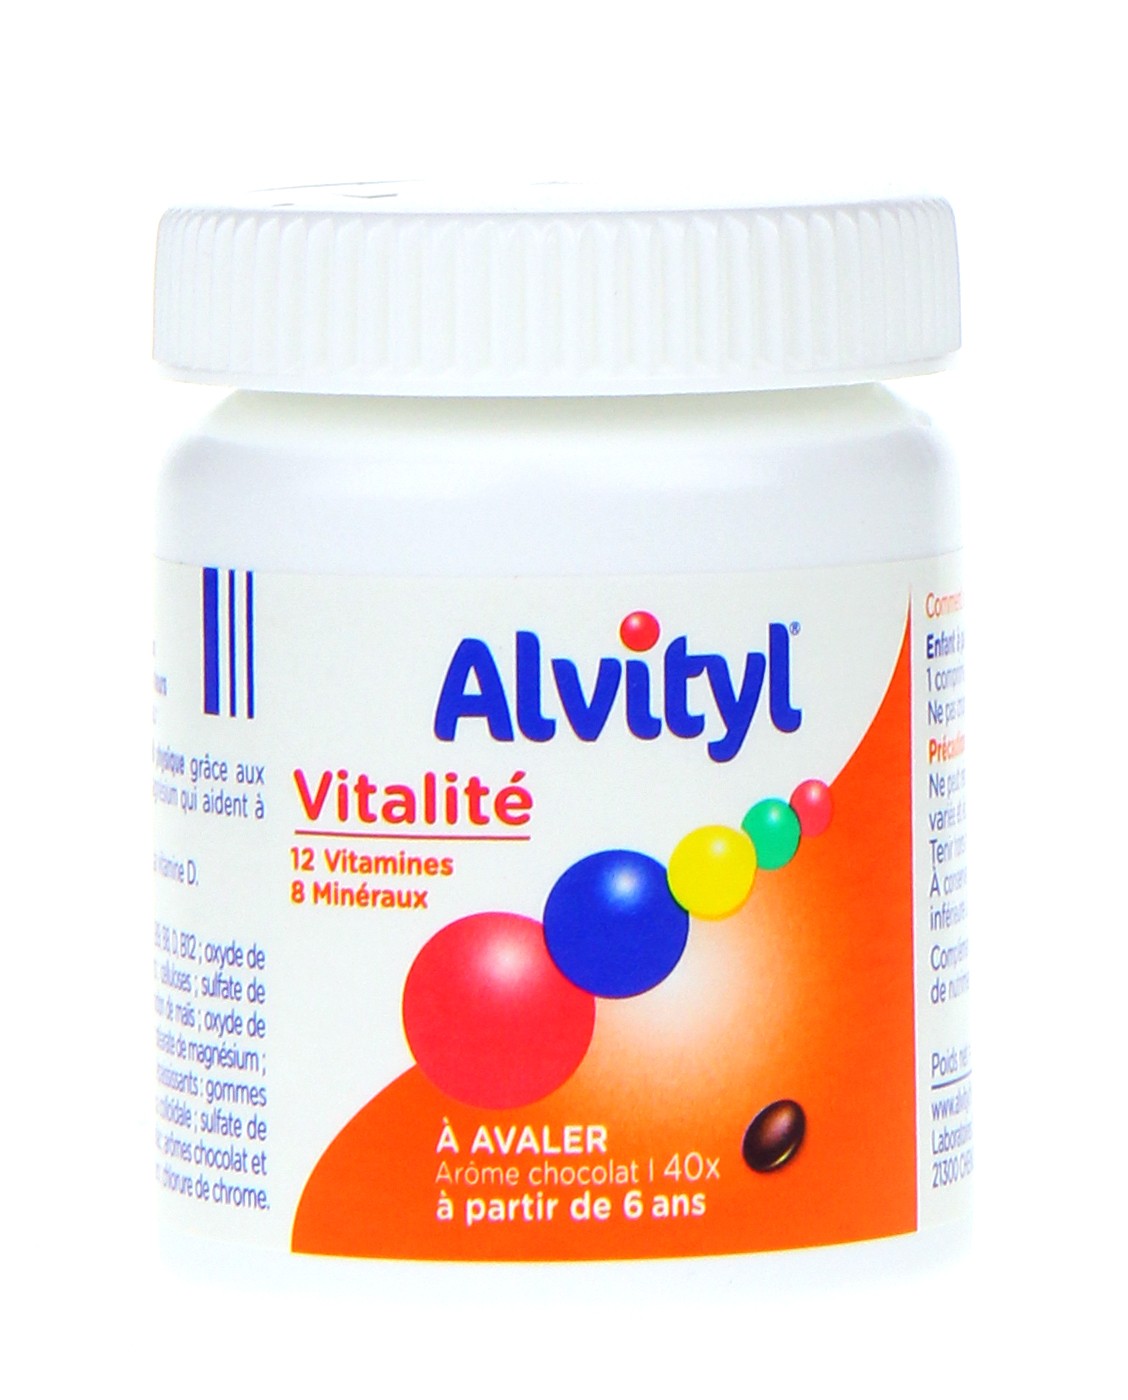 Alvityl Comprimés Forme équilibre Vitalité - Archange-pharma